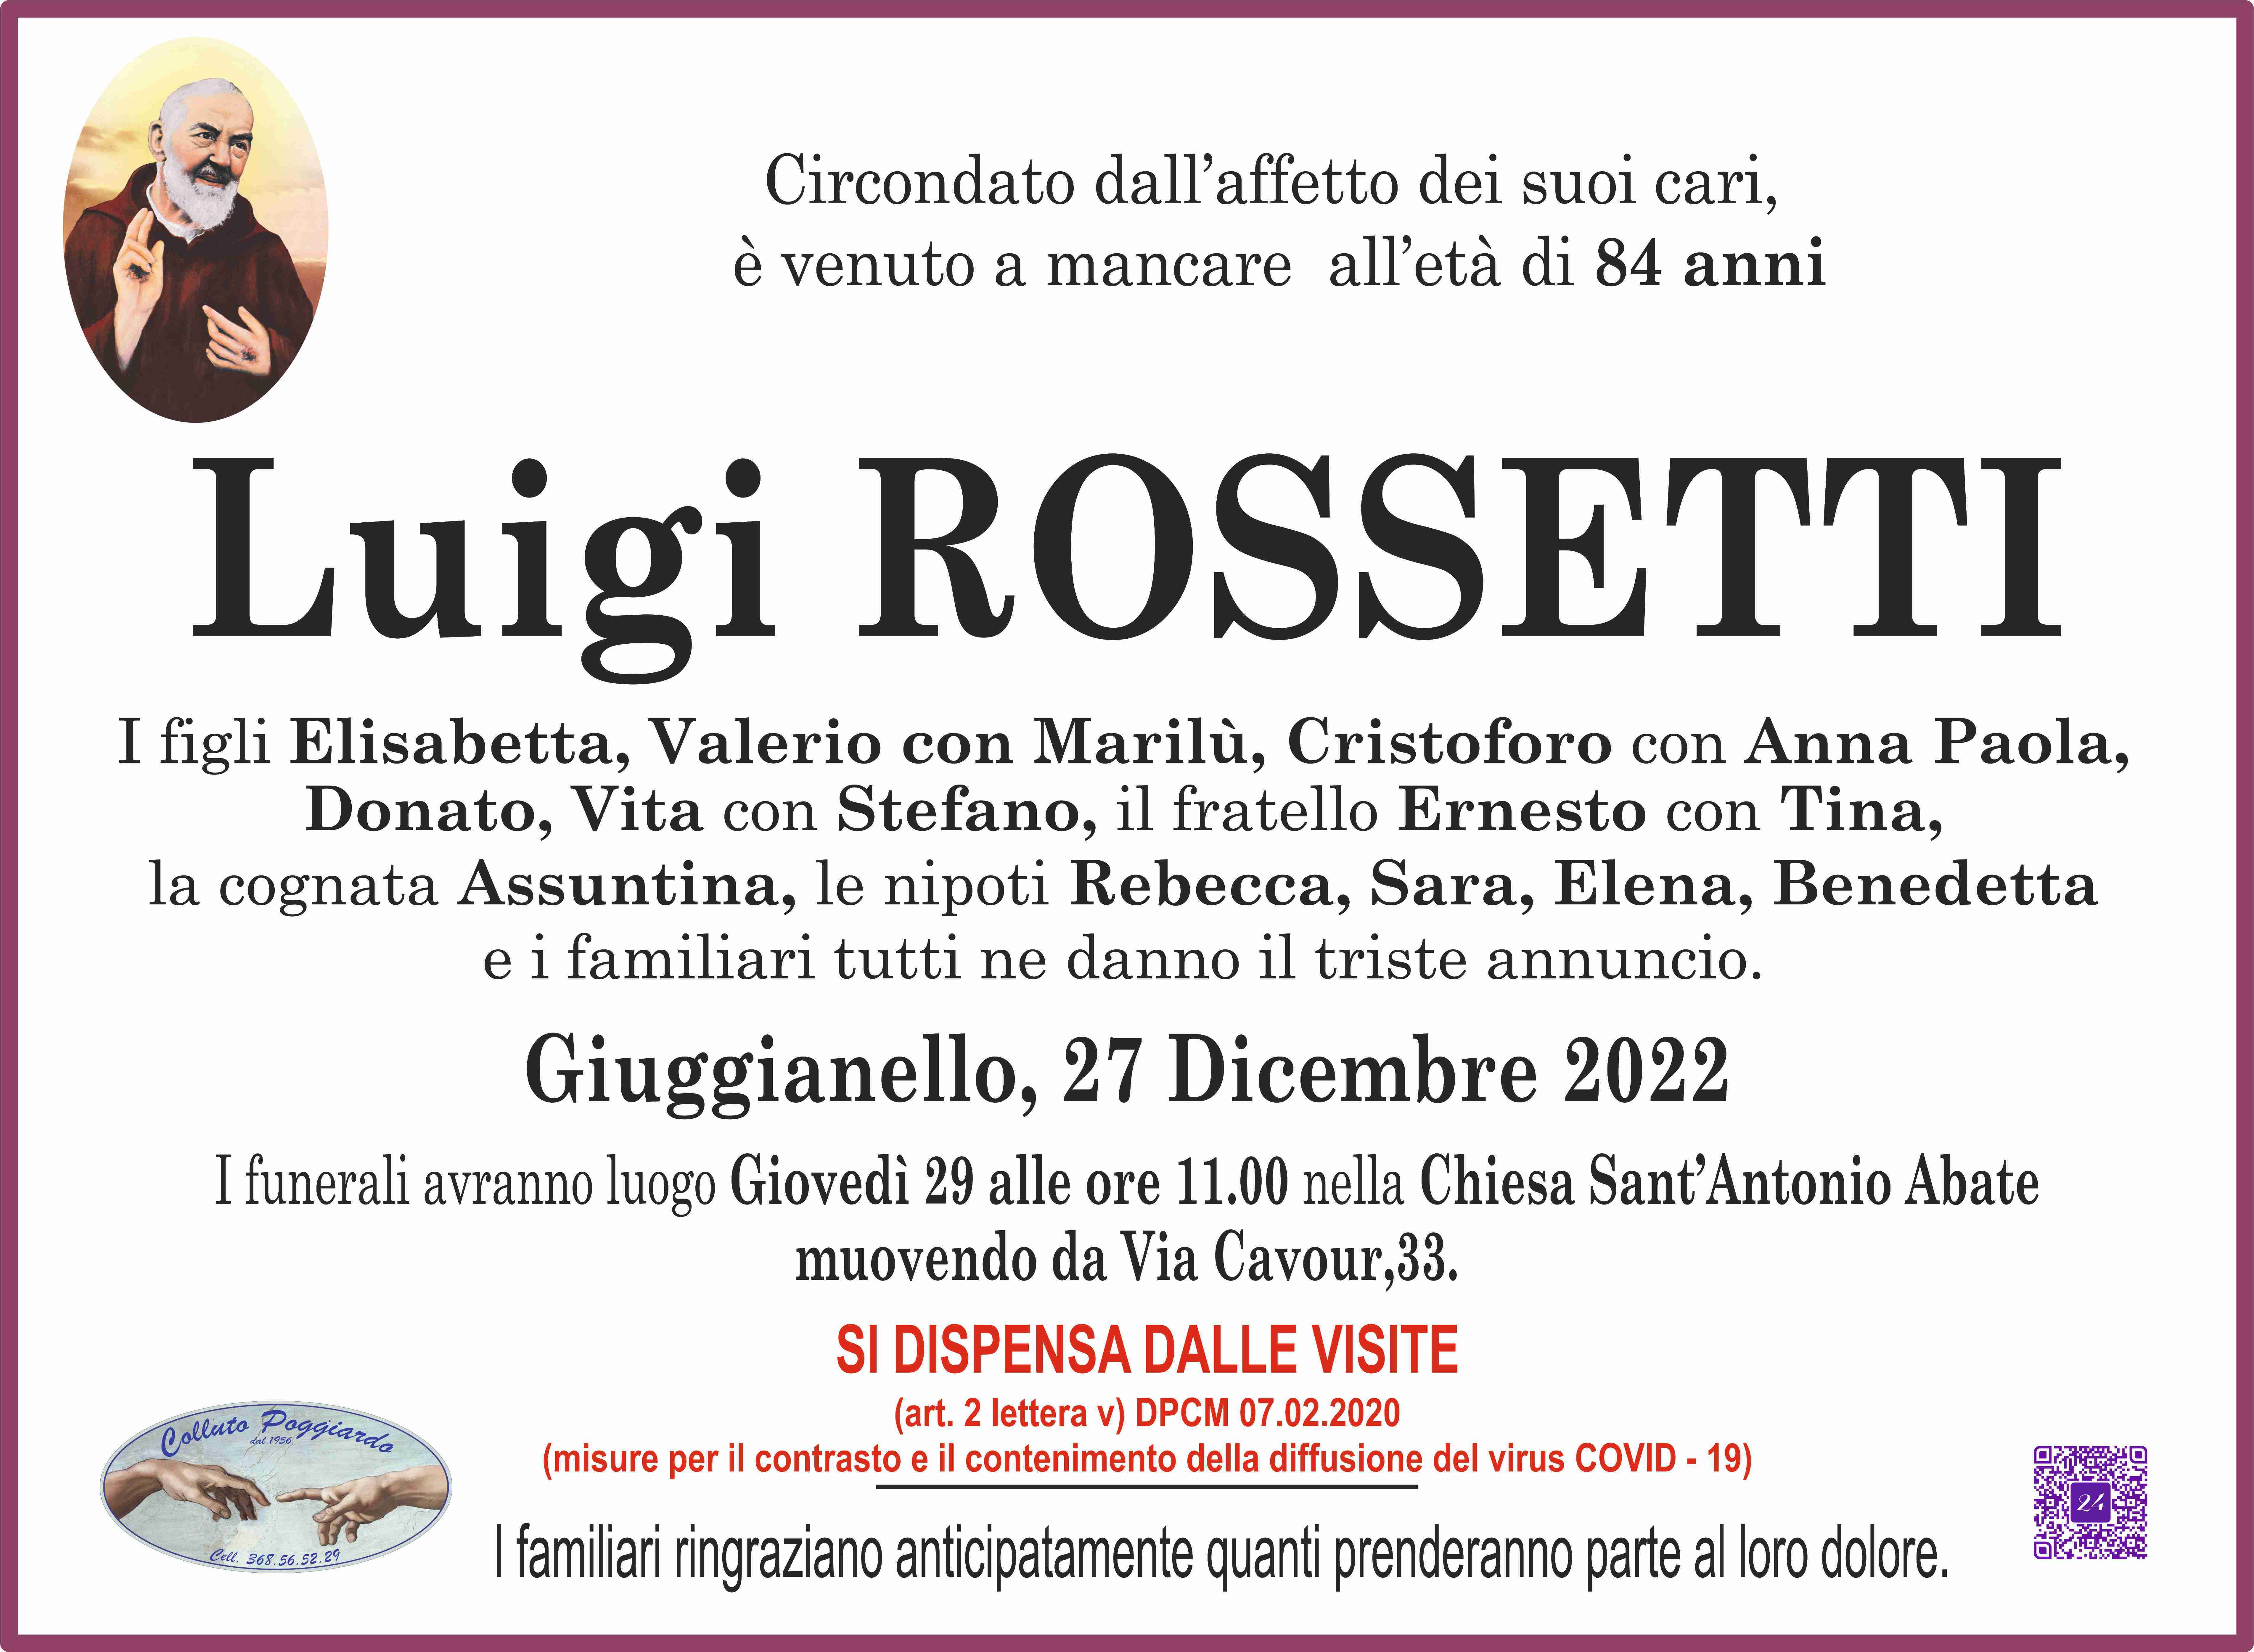 Luigi Rossetti